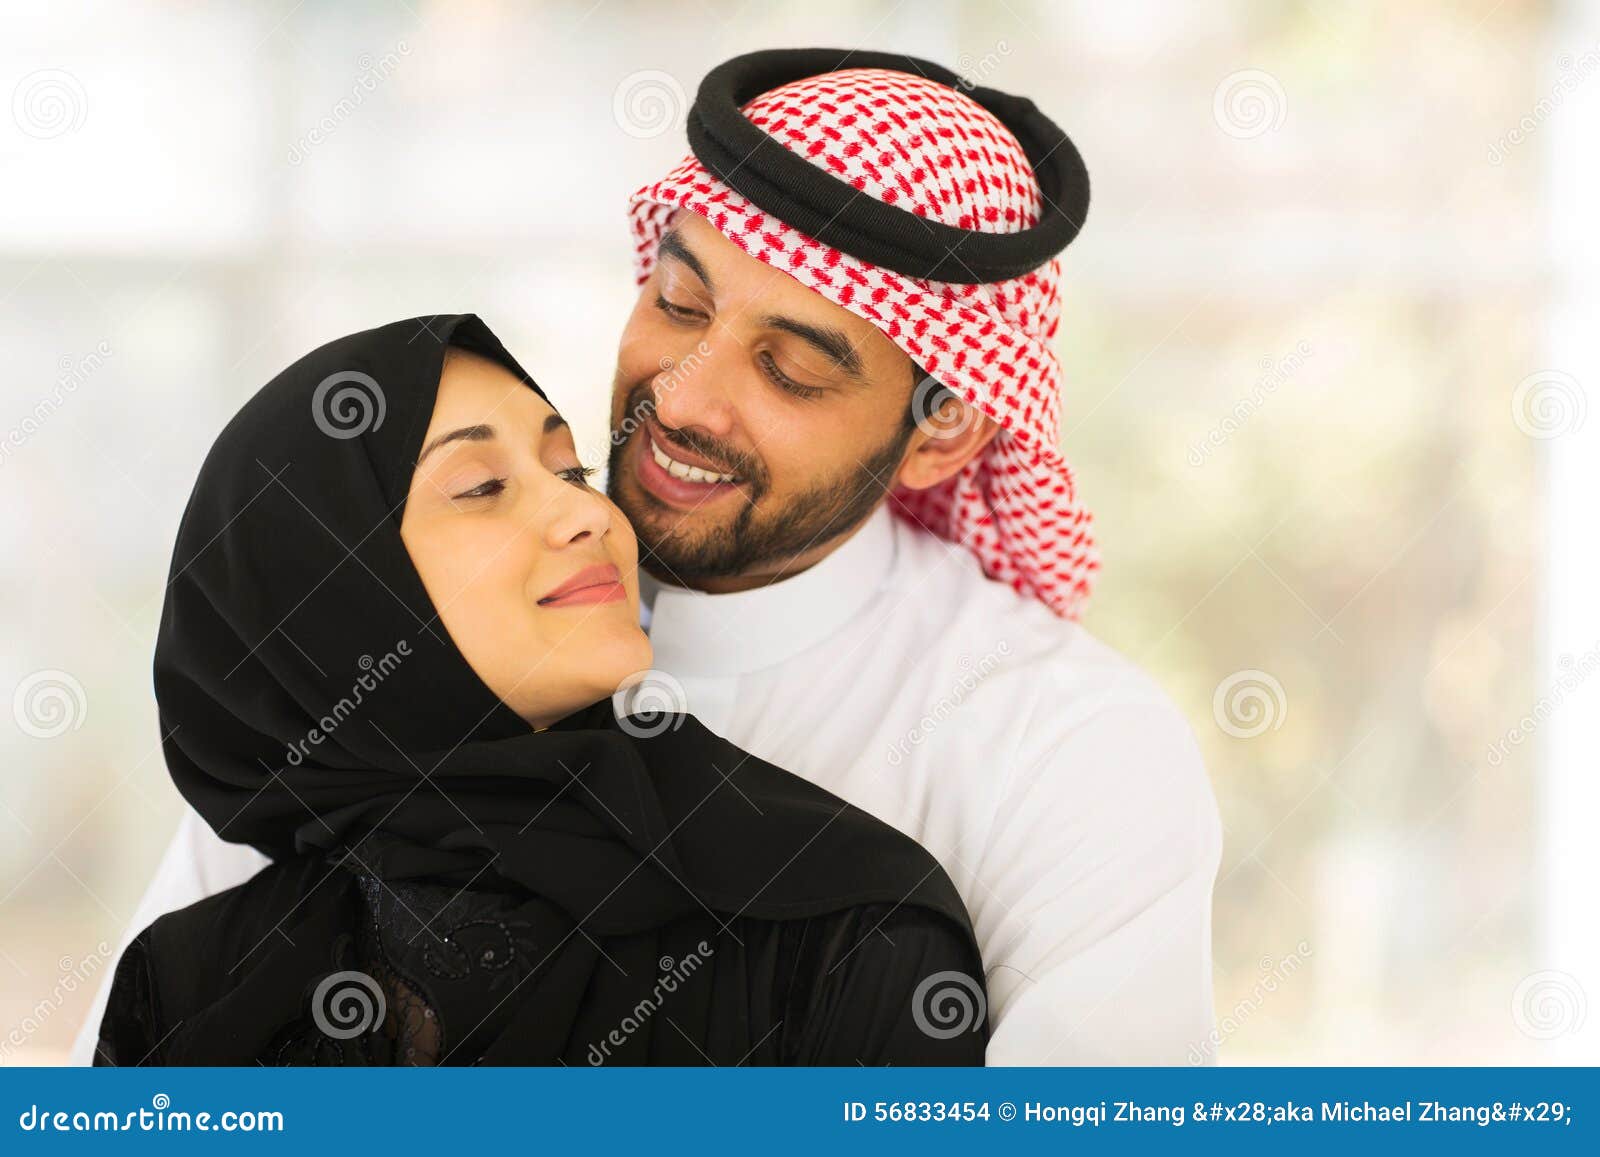 8,419 Muslim Couple Photos - Free ...